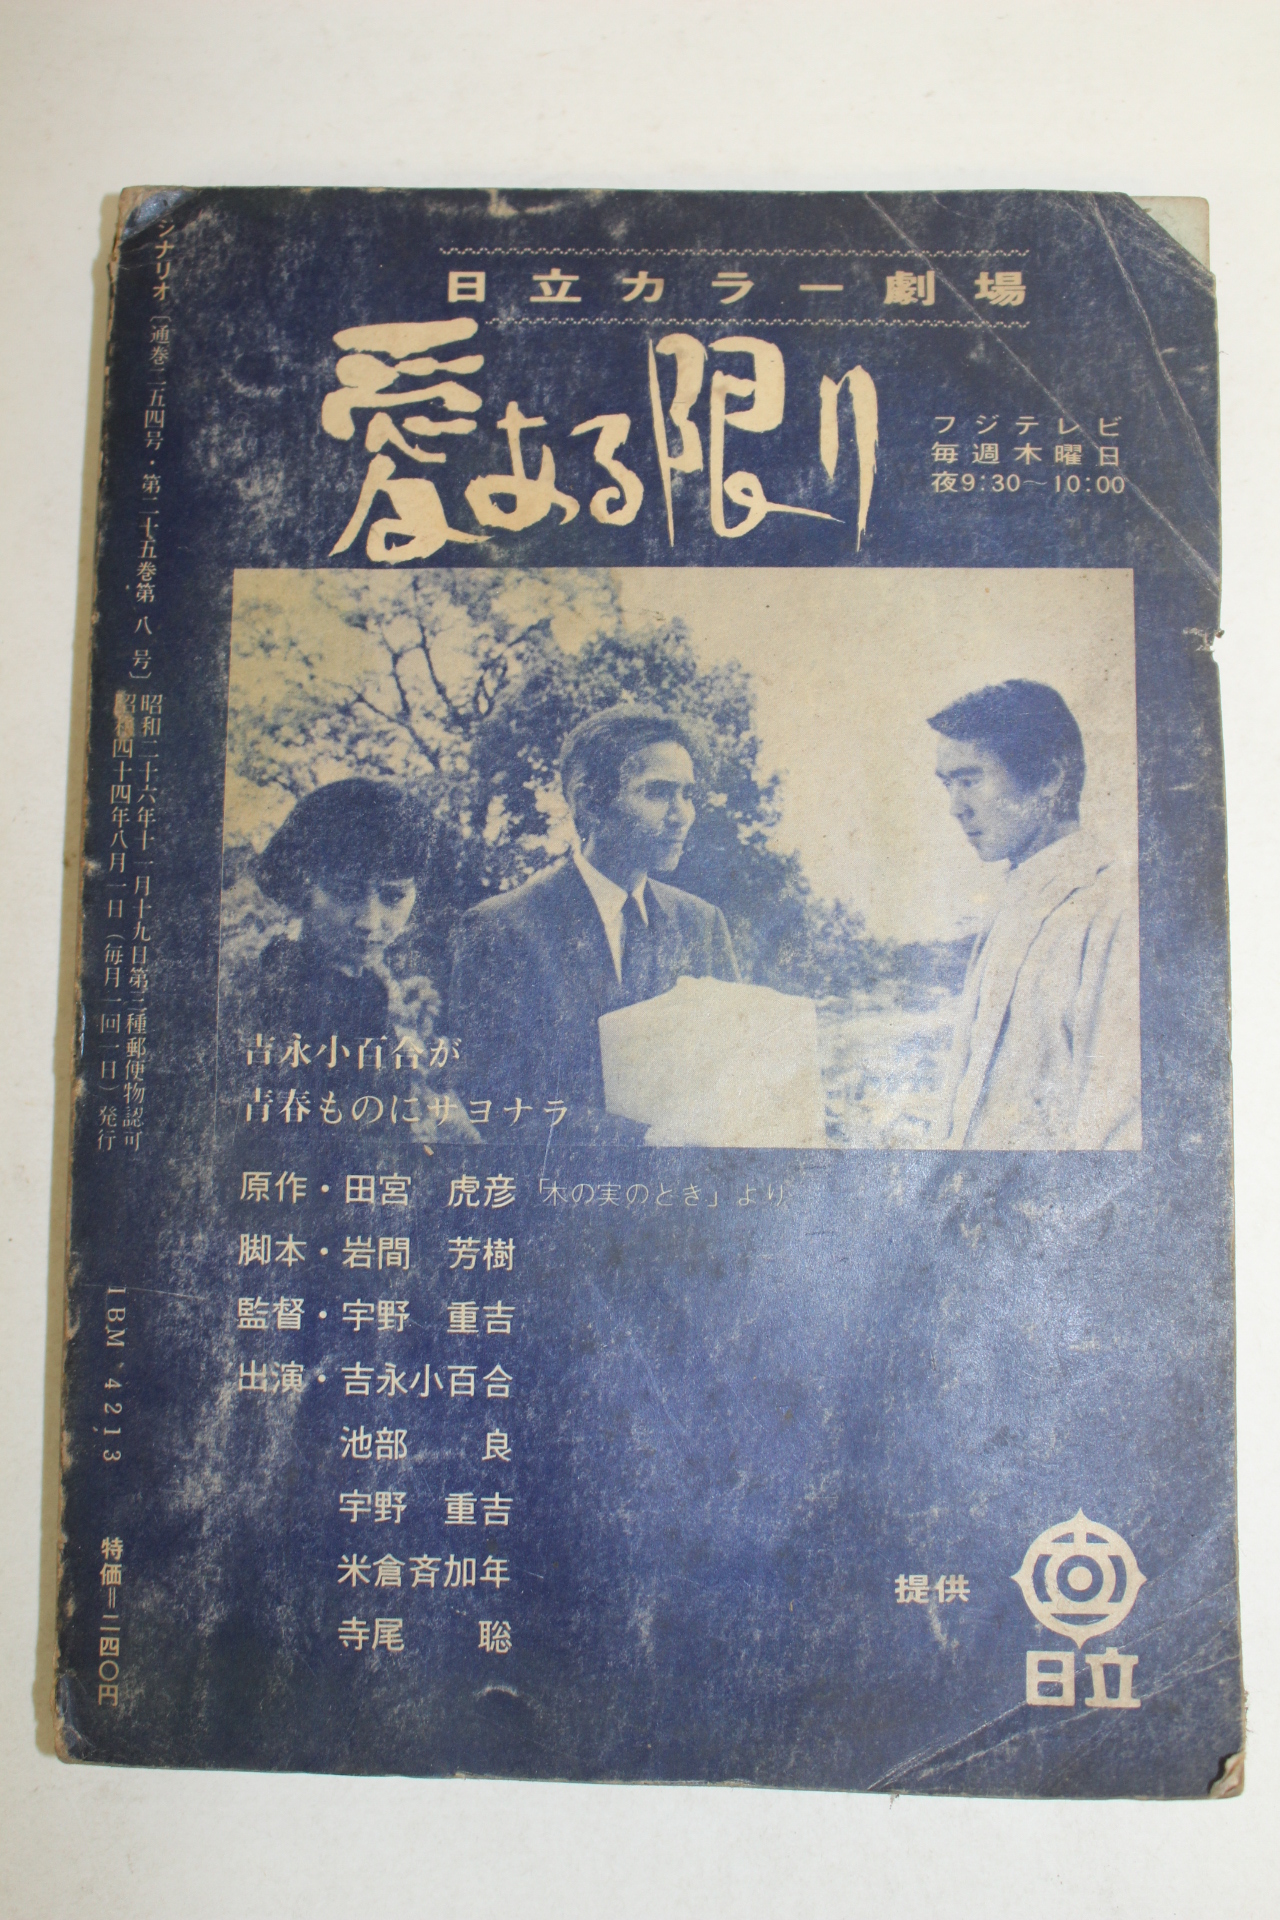 1969년 일본 티브.드라마 잡지